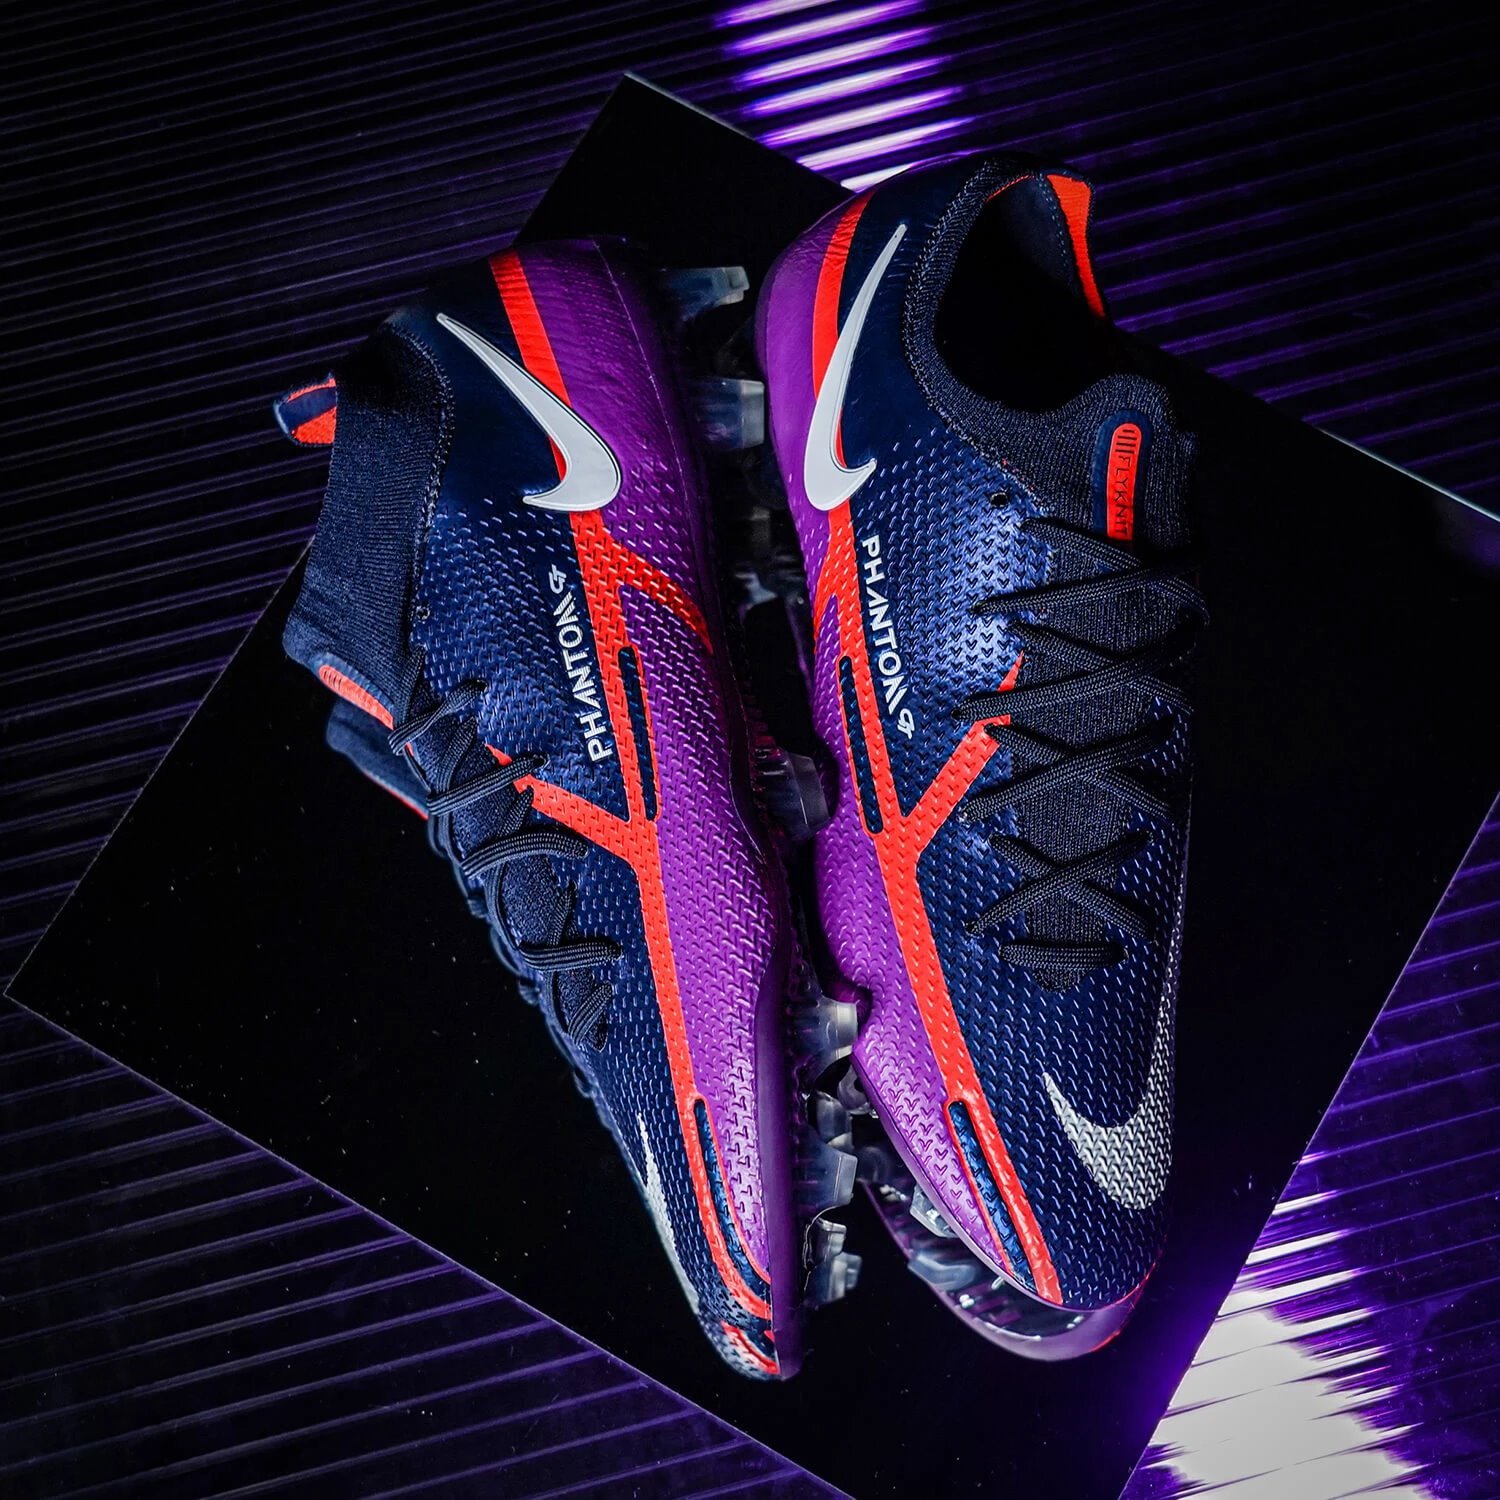 Giới thiệu giày đá bóng Nike Phantom GT II UV ấn tượng